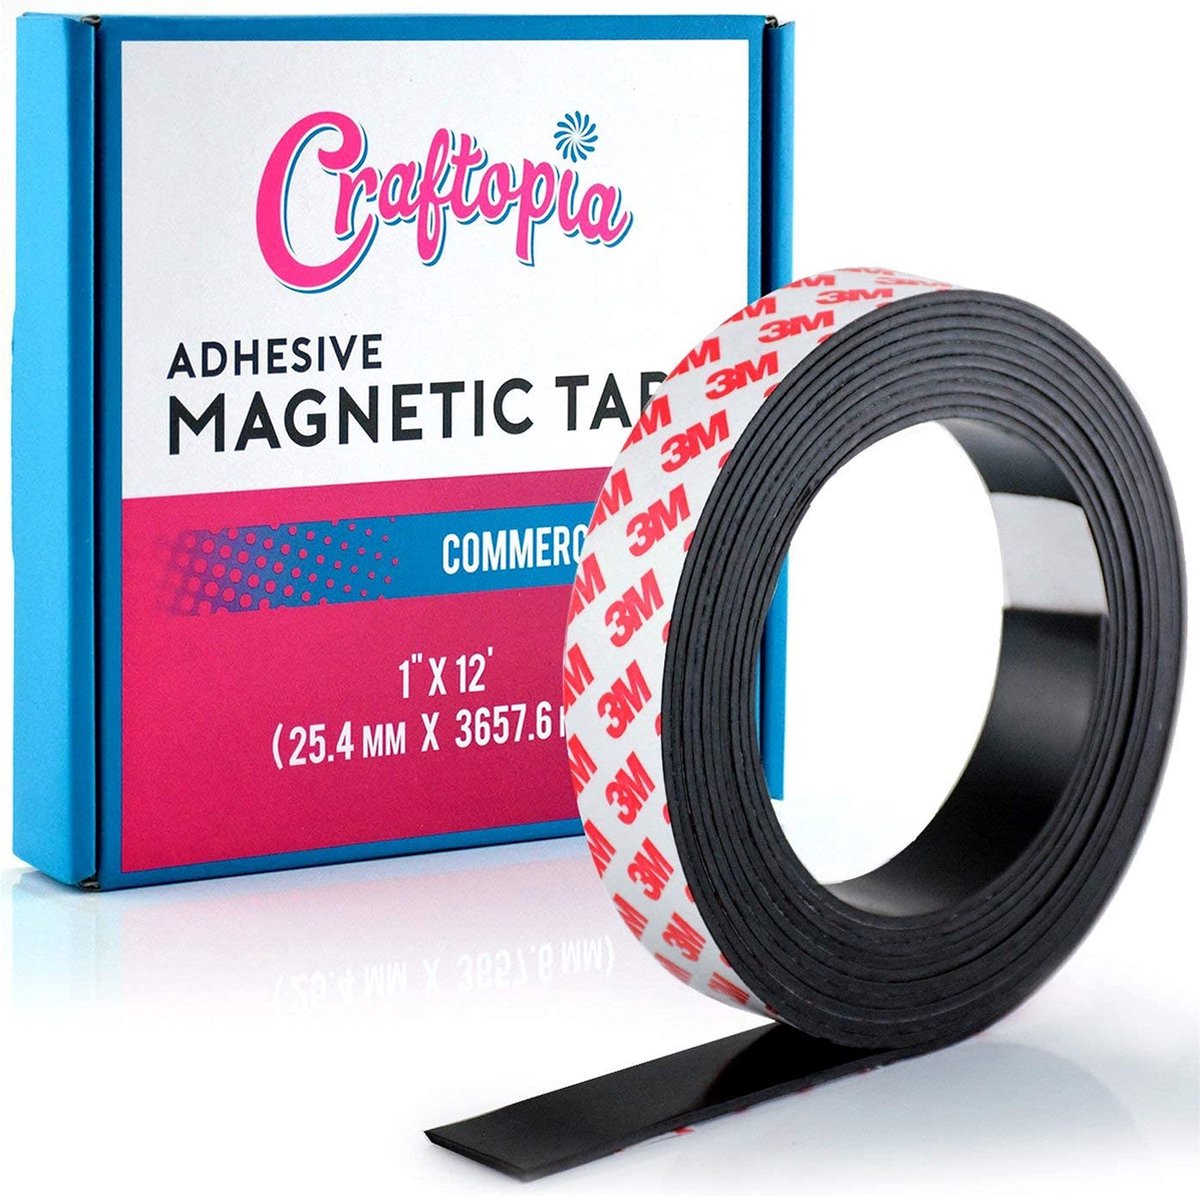 Craftopia® Zelf-adhesieve magnetische strips, Richtbaar, Roll - 1,25 x 765 cm - Flexibel, gemakkelijk te snijden, magnetisch uit te trekken en aan te plakken - Dikke 50 mil, handwerk, kantoor, thuis - Craftopia